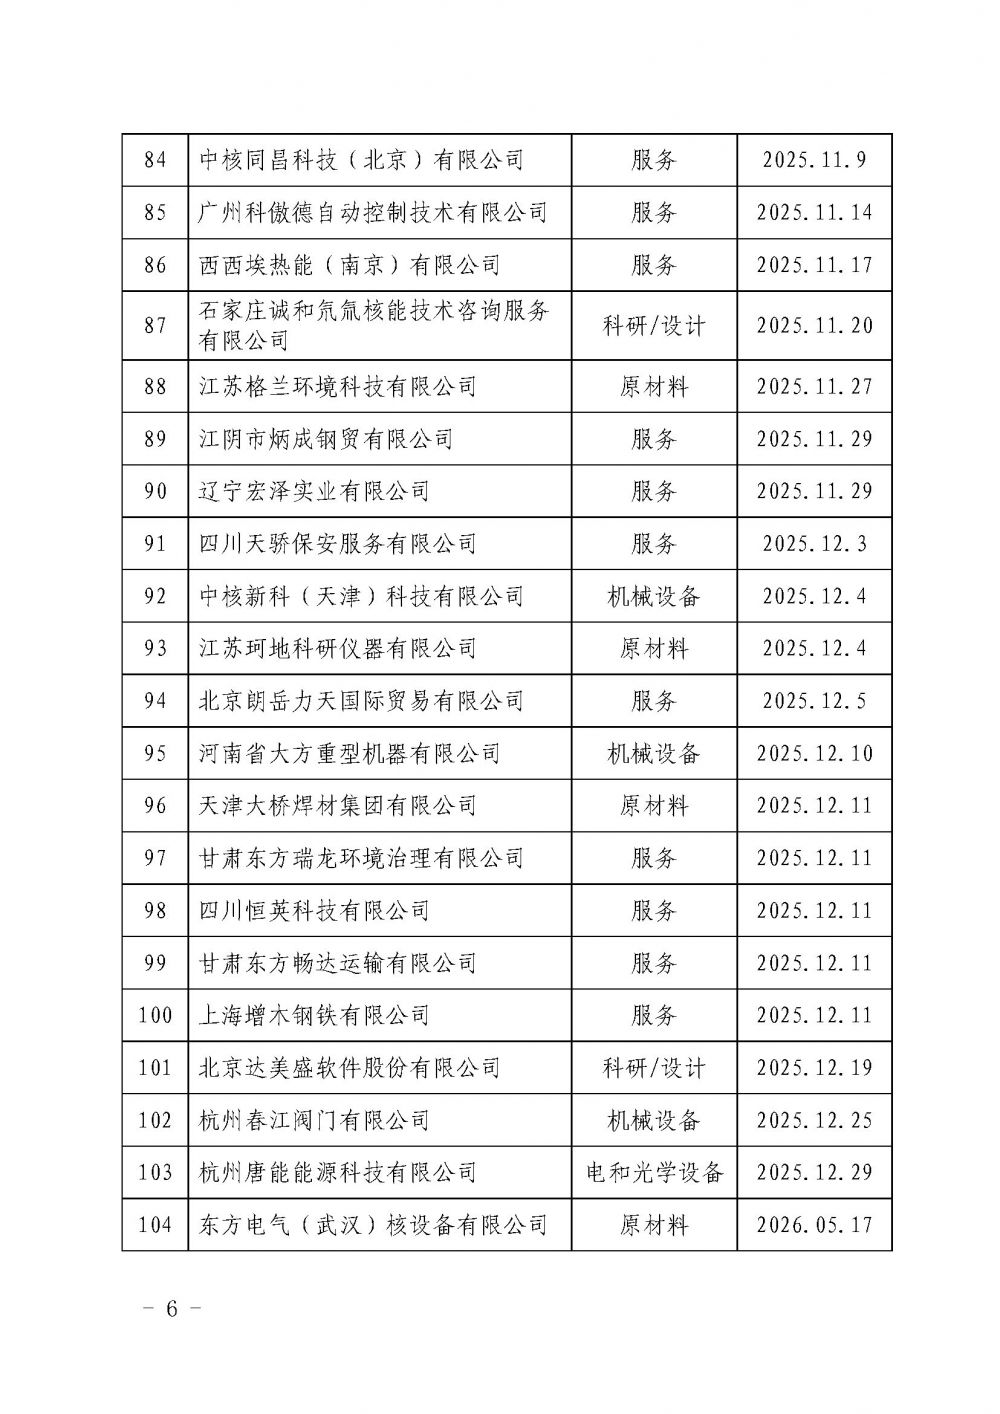 中国核能行业协会关于发布第十九批核能行业合格供应商名录的公告_页面_6.jpg